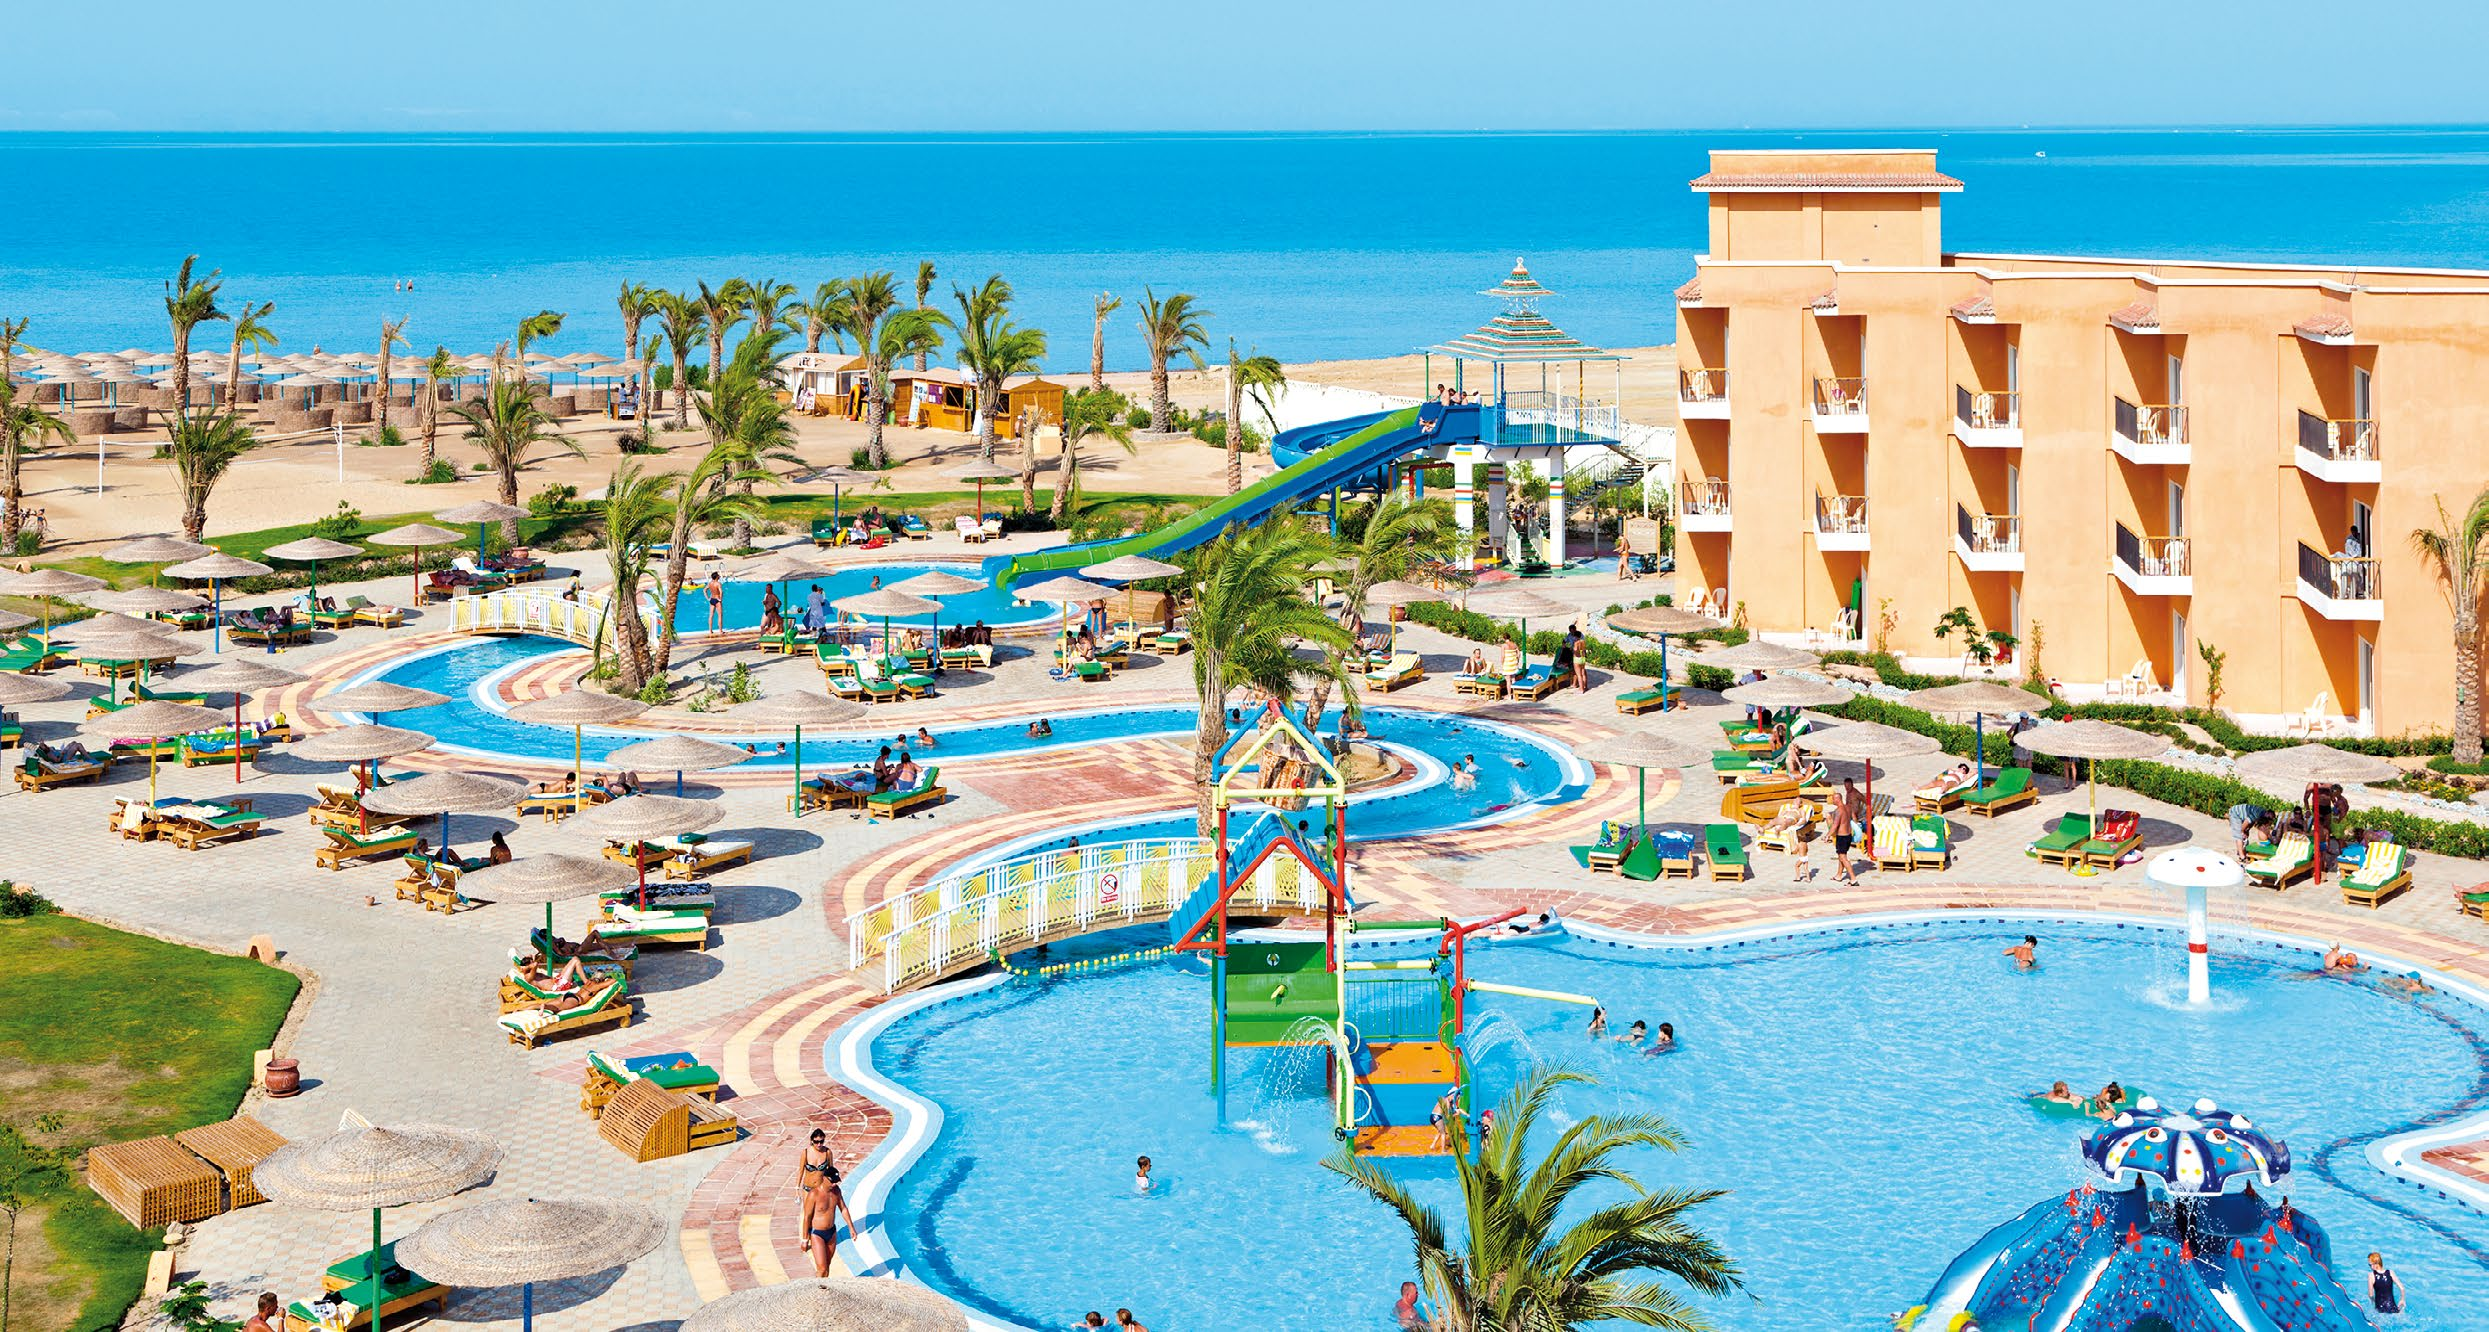 HURGHADA ~ EGYPT 9 obľúbený hotel od 312 Sunny Beach Resort HOTELOVÝ KOMPLEX Naša mienka: Populárny hotelový komplex Three Corners Sunny Beach Resort s aquaparkom a palmami lemovaným areálom sa